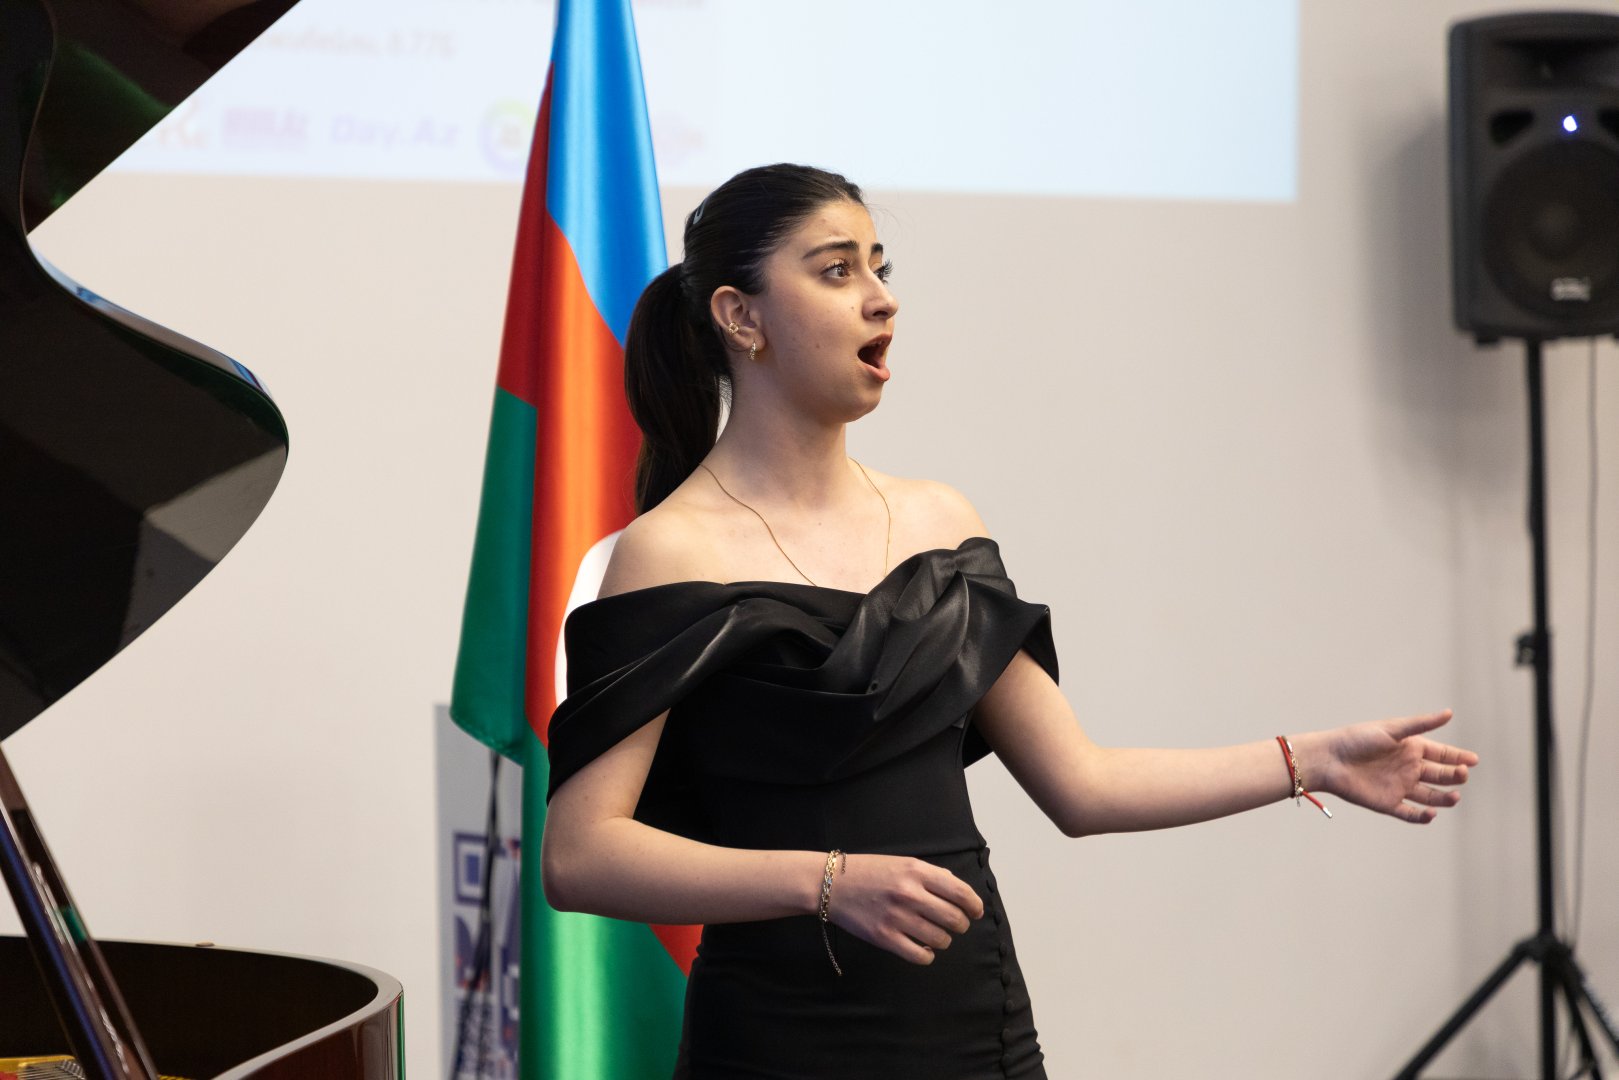 В Баку красочной музыкальной программой отметили 150-летие Елены Гнесиной (ФОТО)